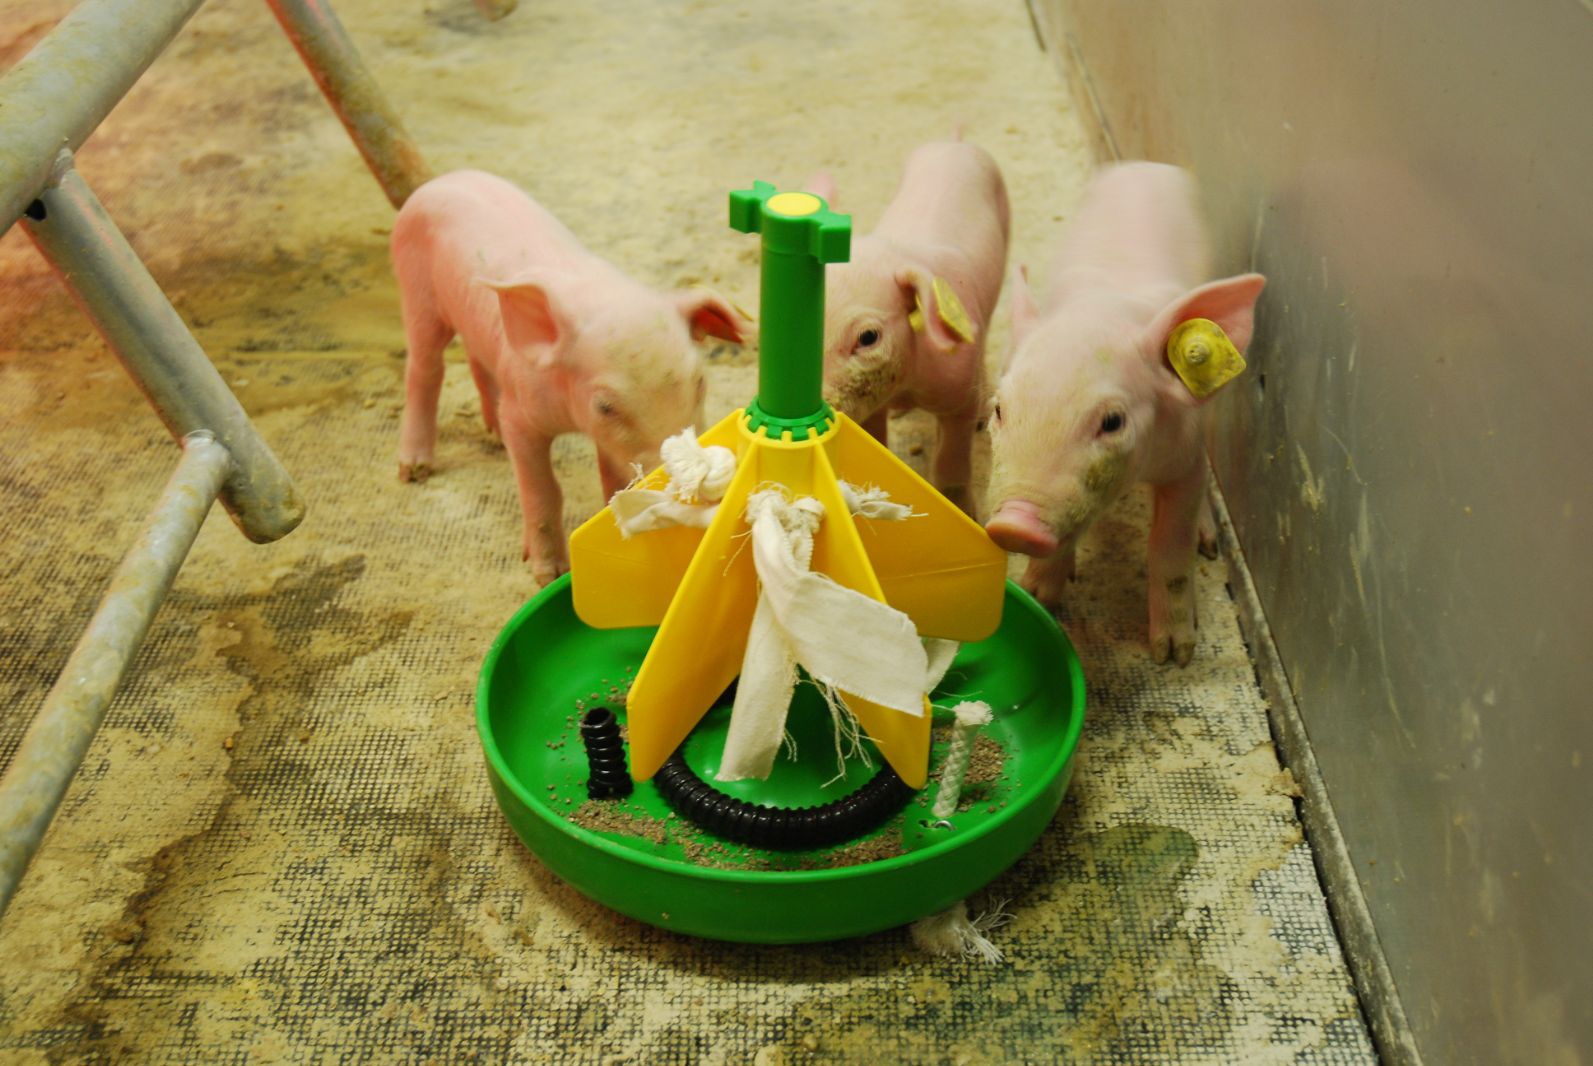 Coppens Diervoeding › Alle leren eten voor het spenen | Pigbusiness.nl Nieuws voor varkenshouders